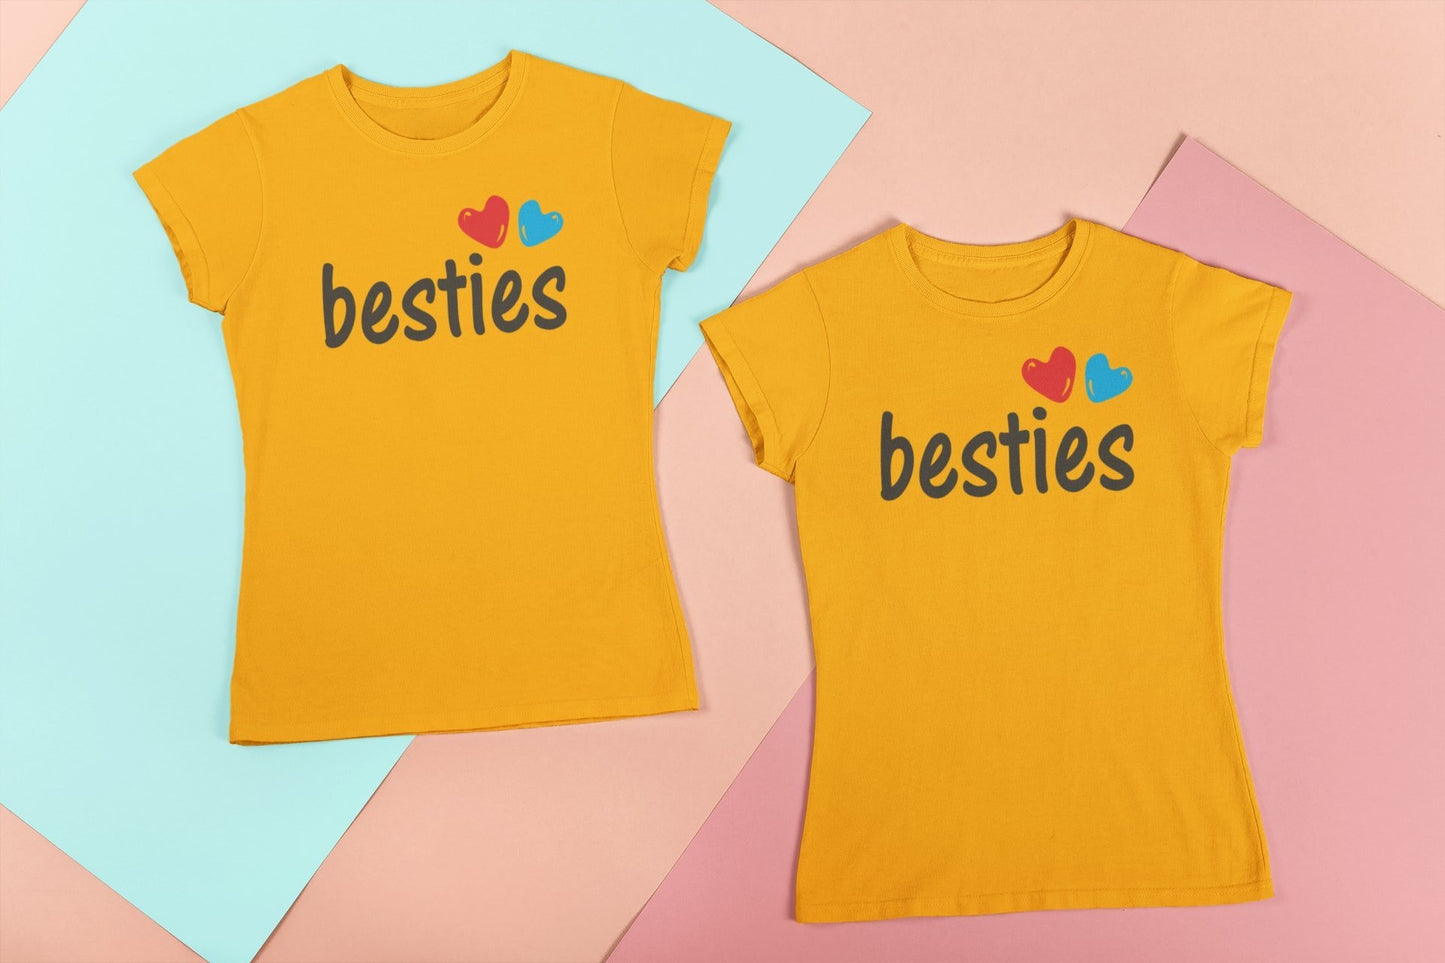 Besties Friends Matching T-shirts for Women